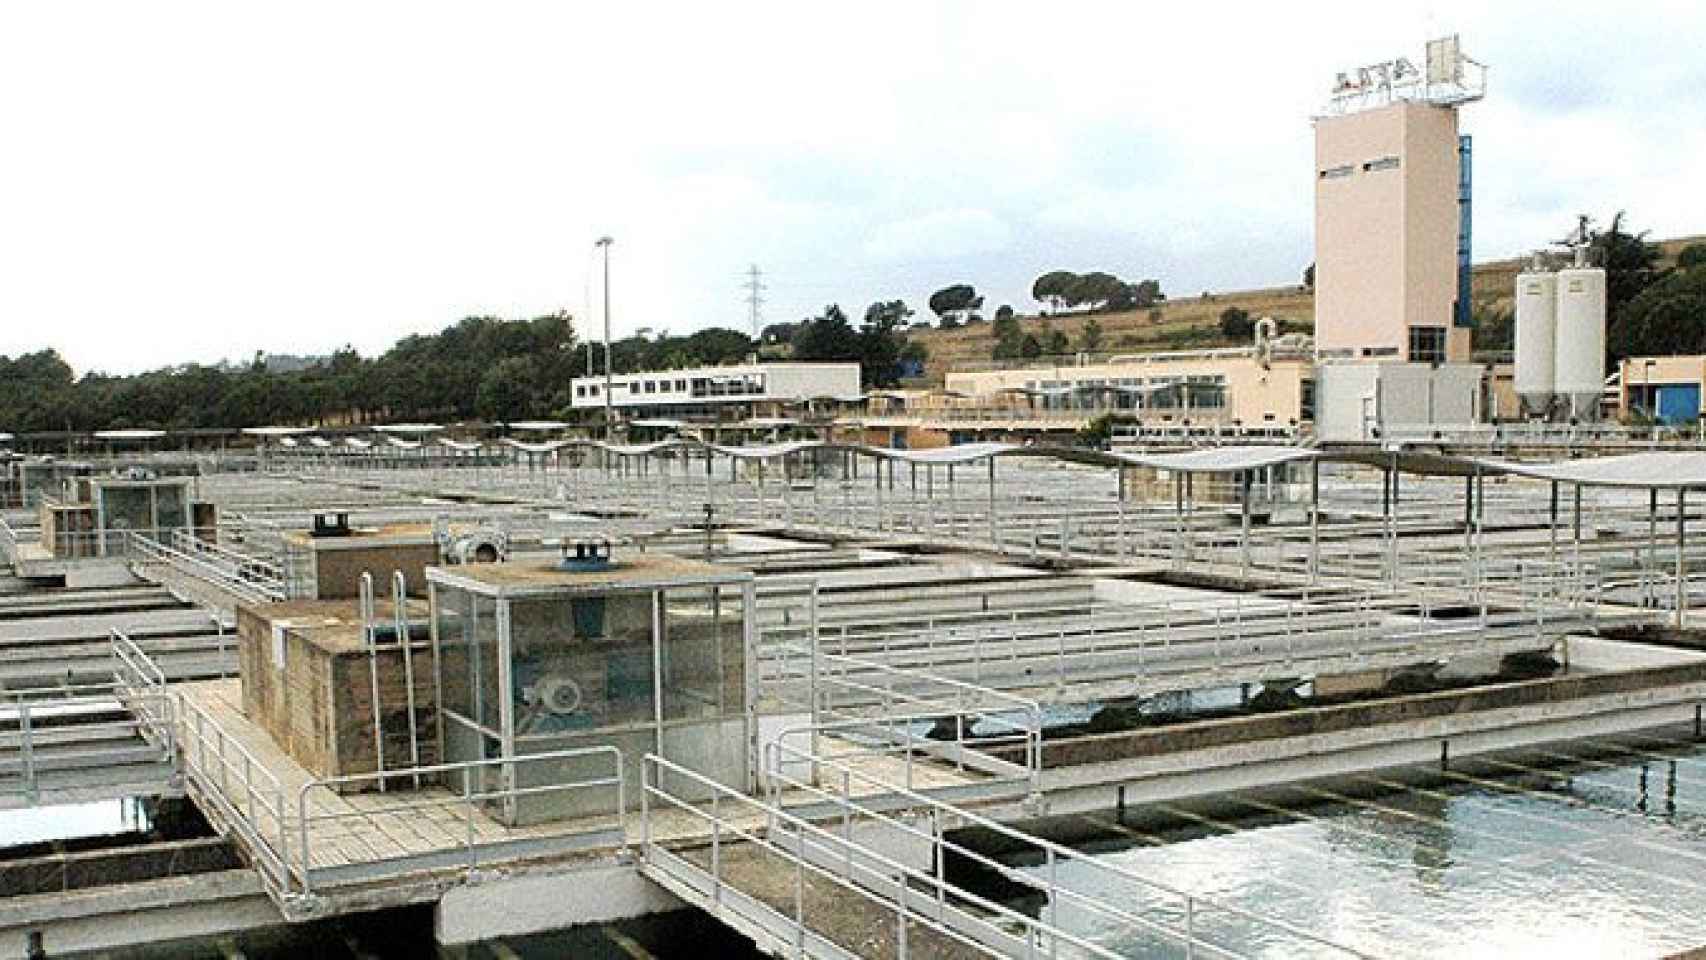 Estación de tratamiento de agua potable del Ter, en la red de ATLL que aún gestiona Acciona / ATLL